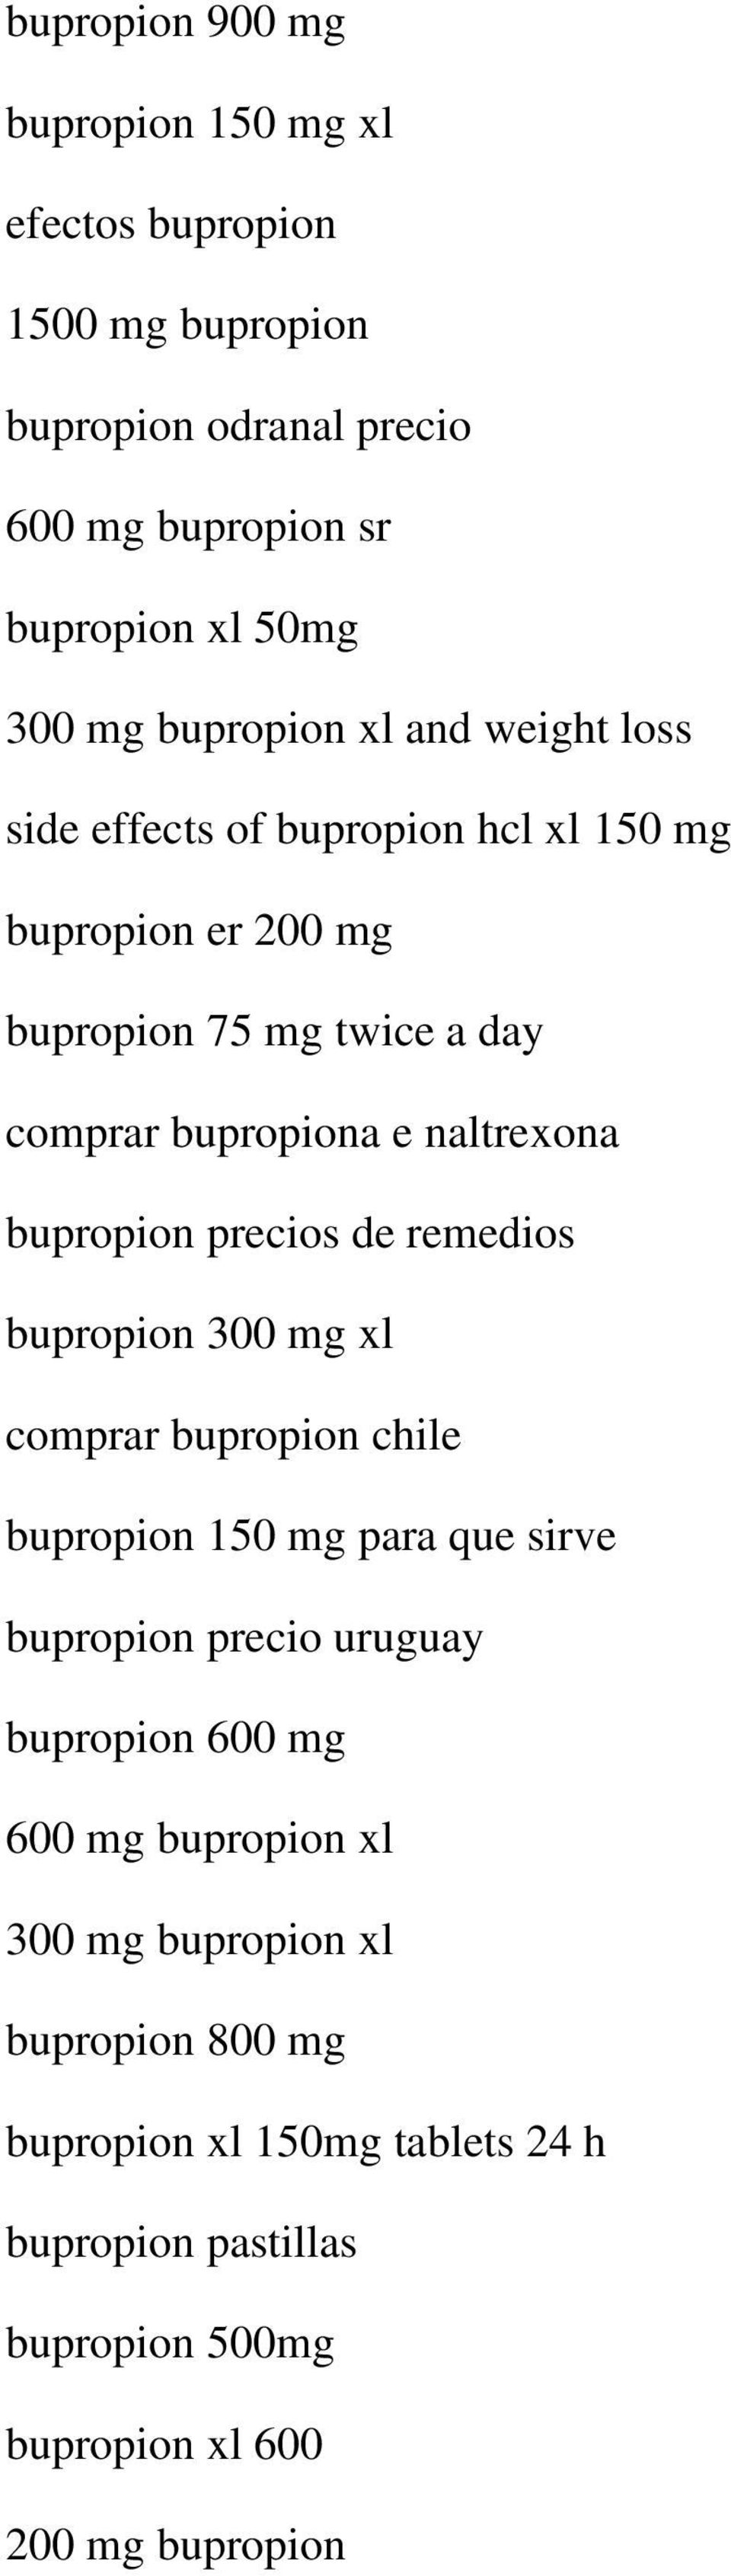 bupropion precios de remedios bupropion 300 mg xl comprar bupropion chile bupropion 150 mg para que sirve bupropion precio uruguay bupropion 600 mg